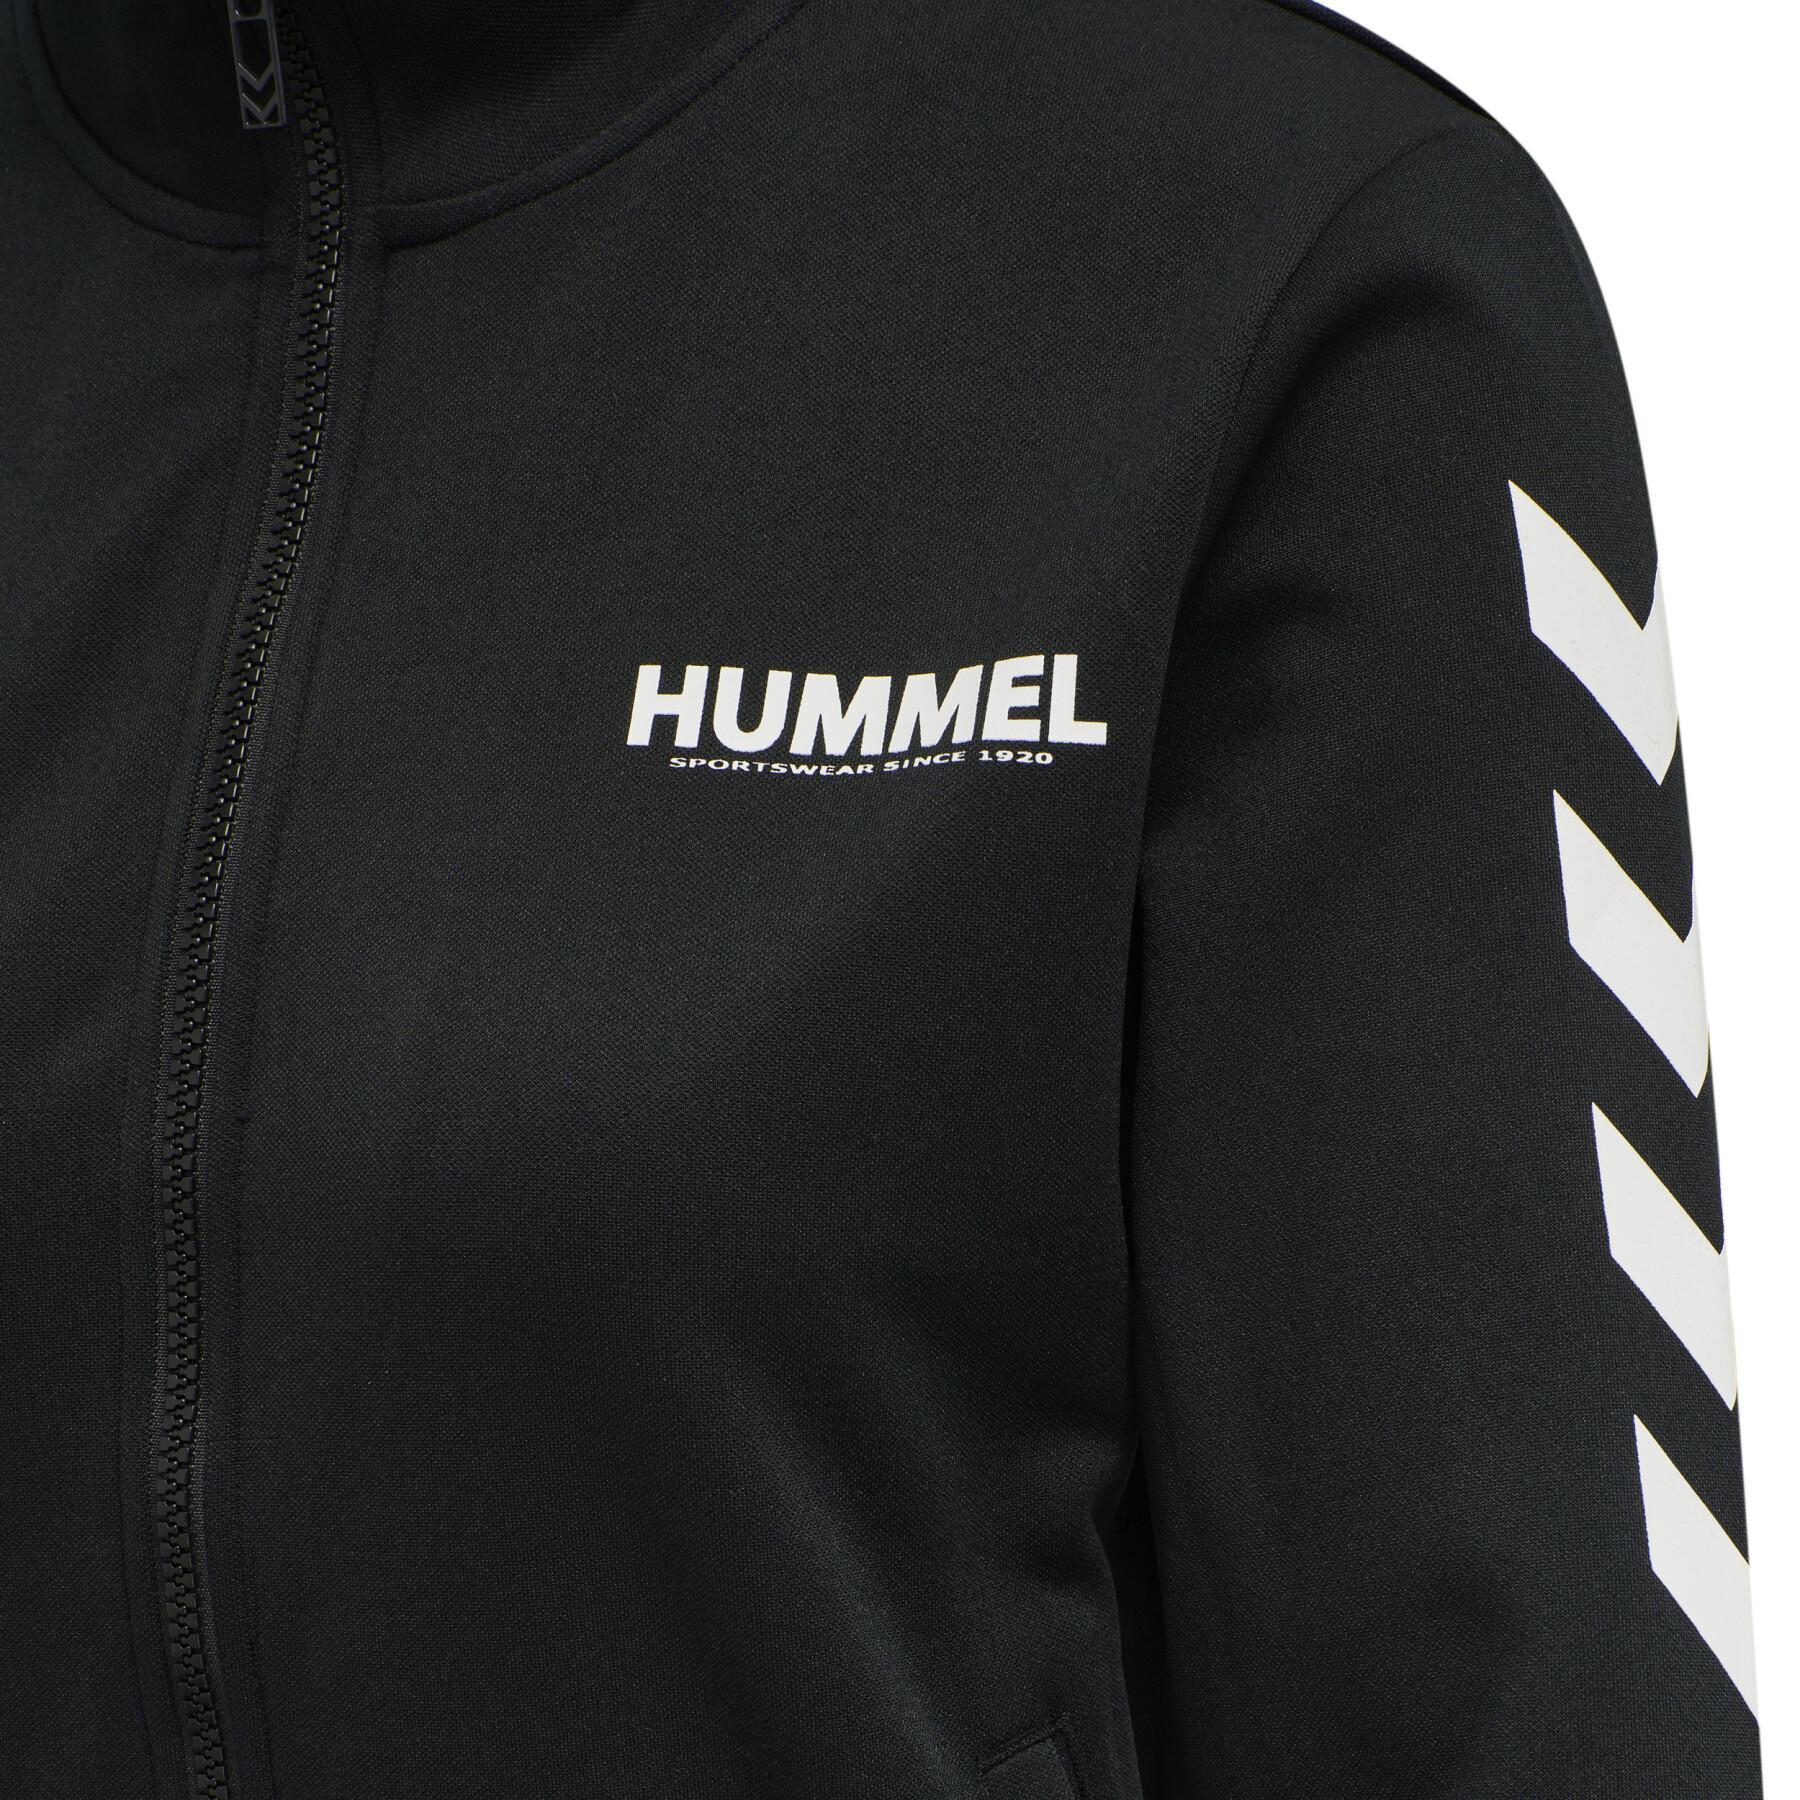 Damska bluza dresowa zapinana na zamek Hummel Legacy